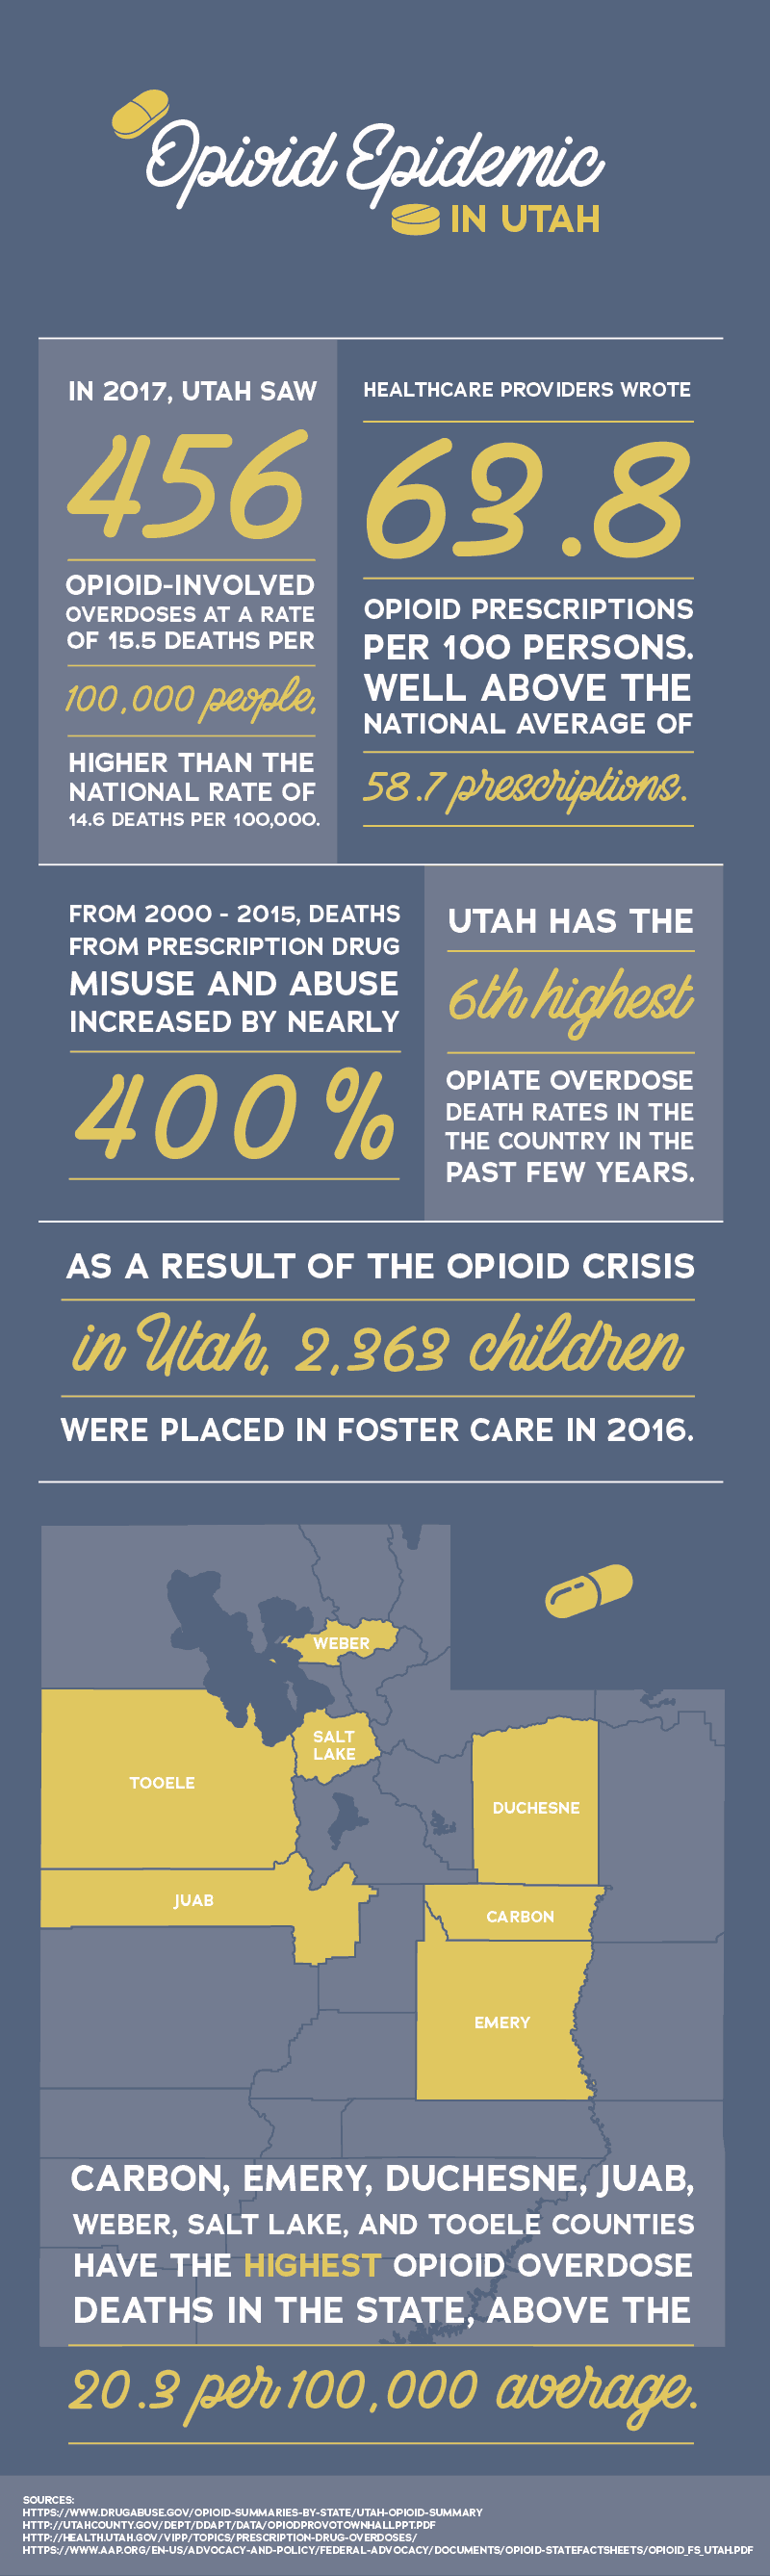 Opioid Epidemic in Utah